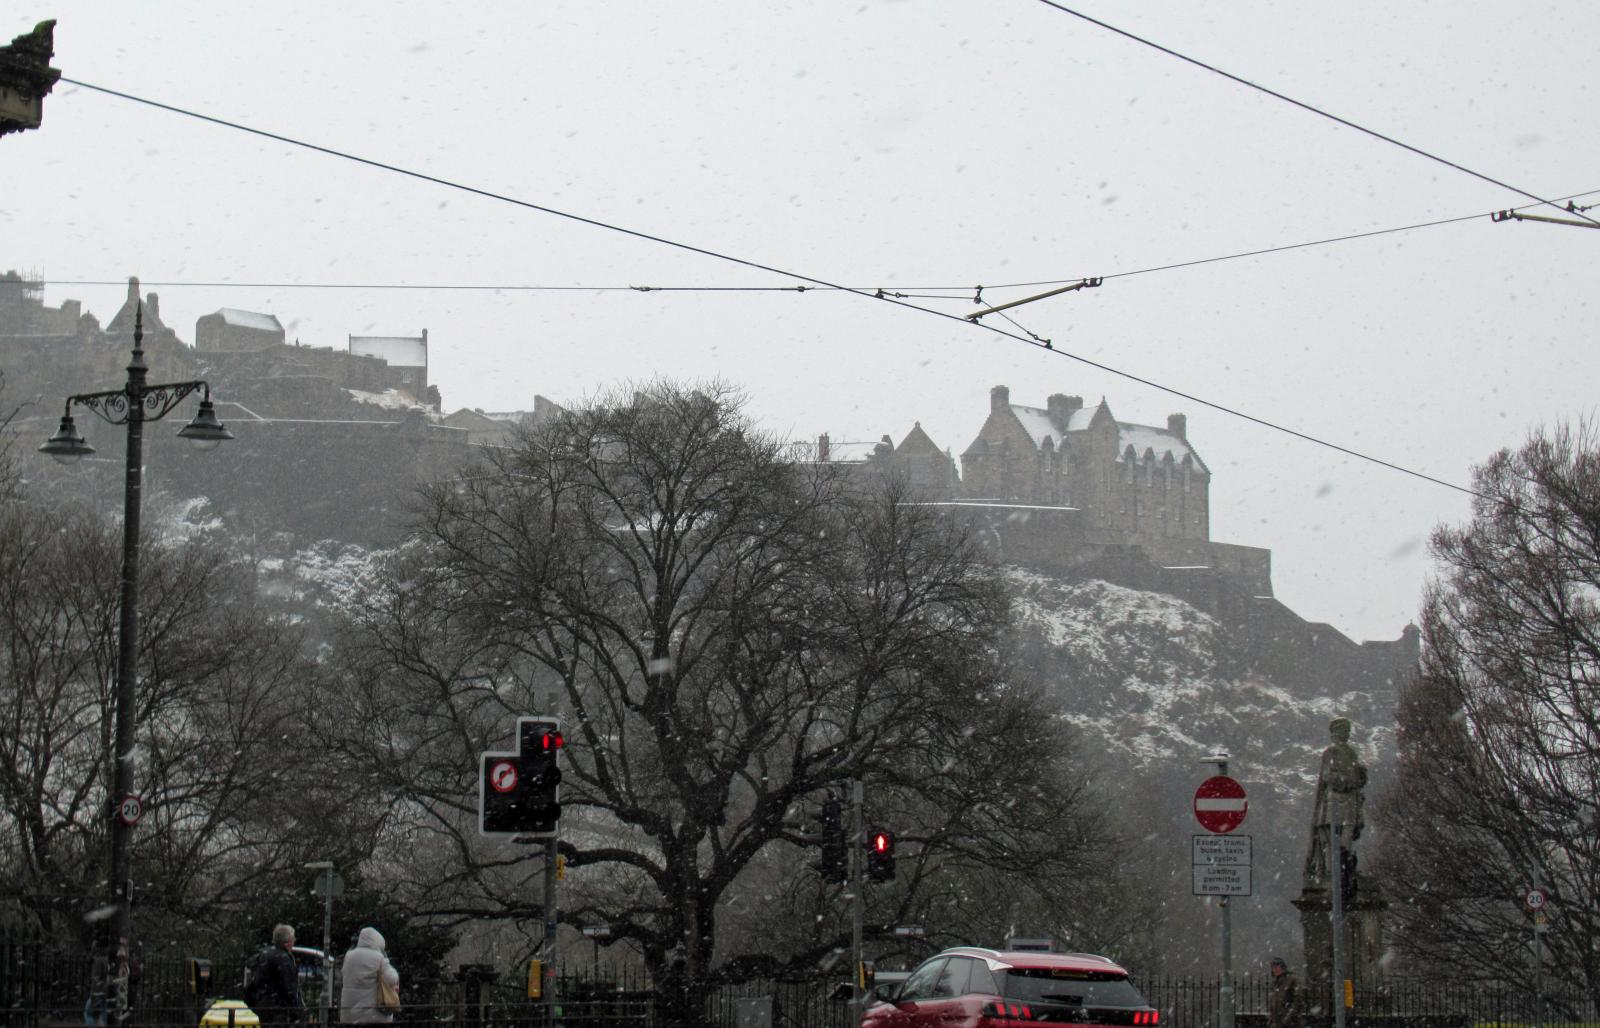 Edinburgh castle in snow